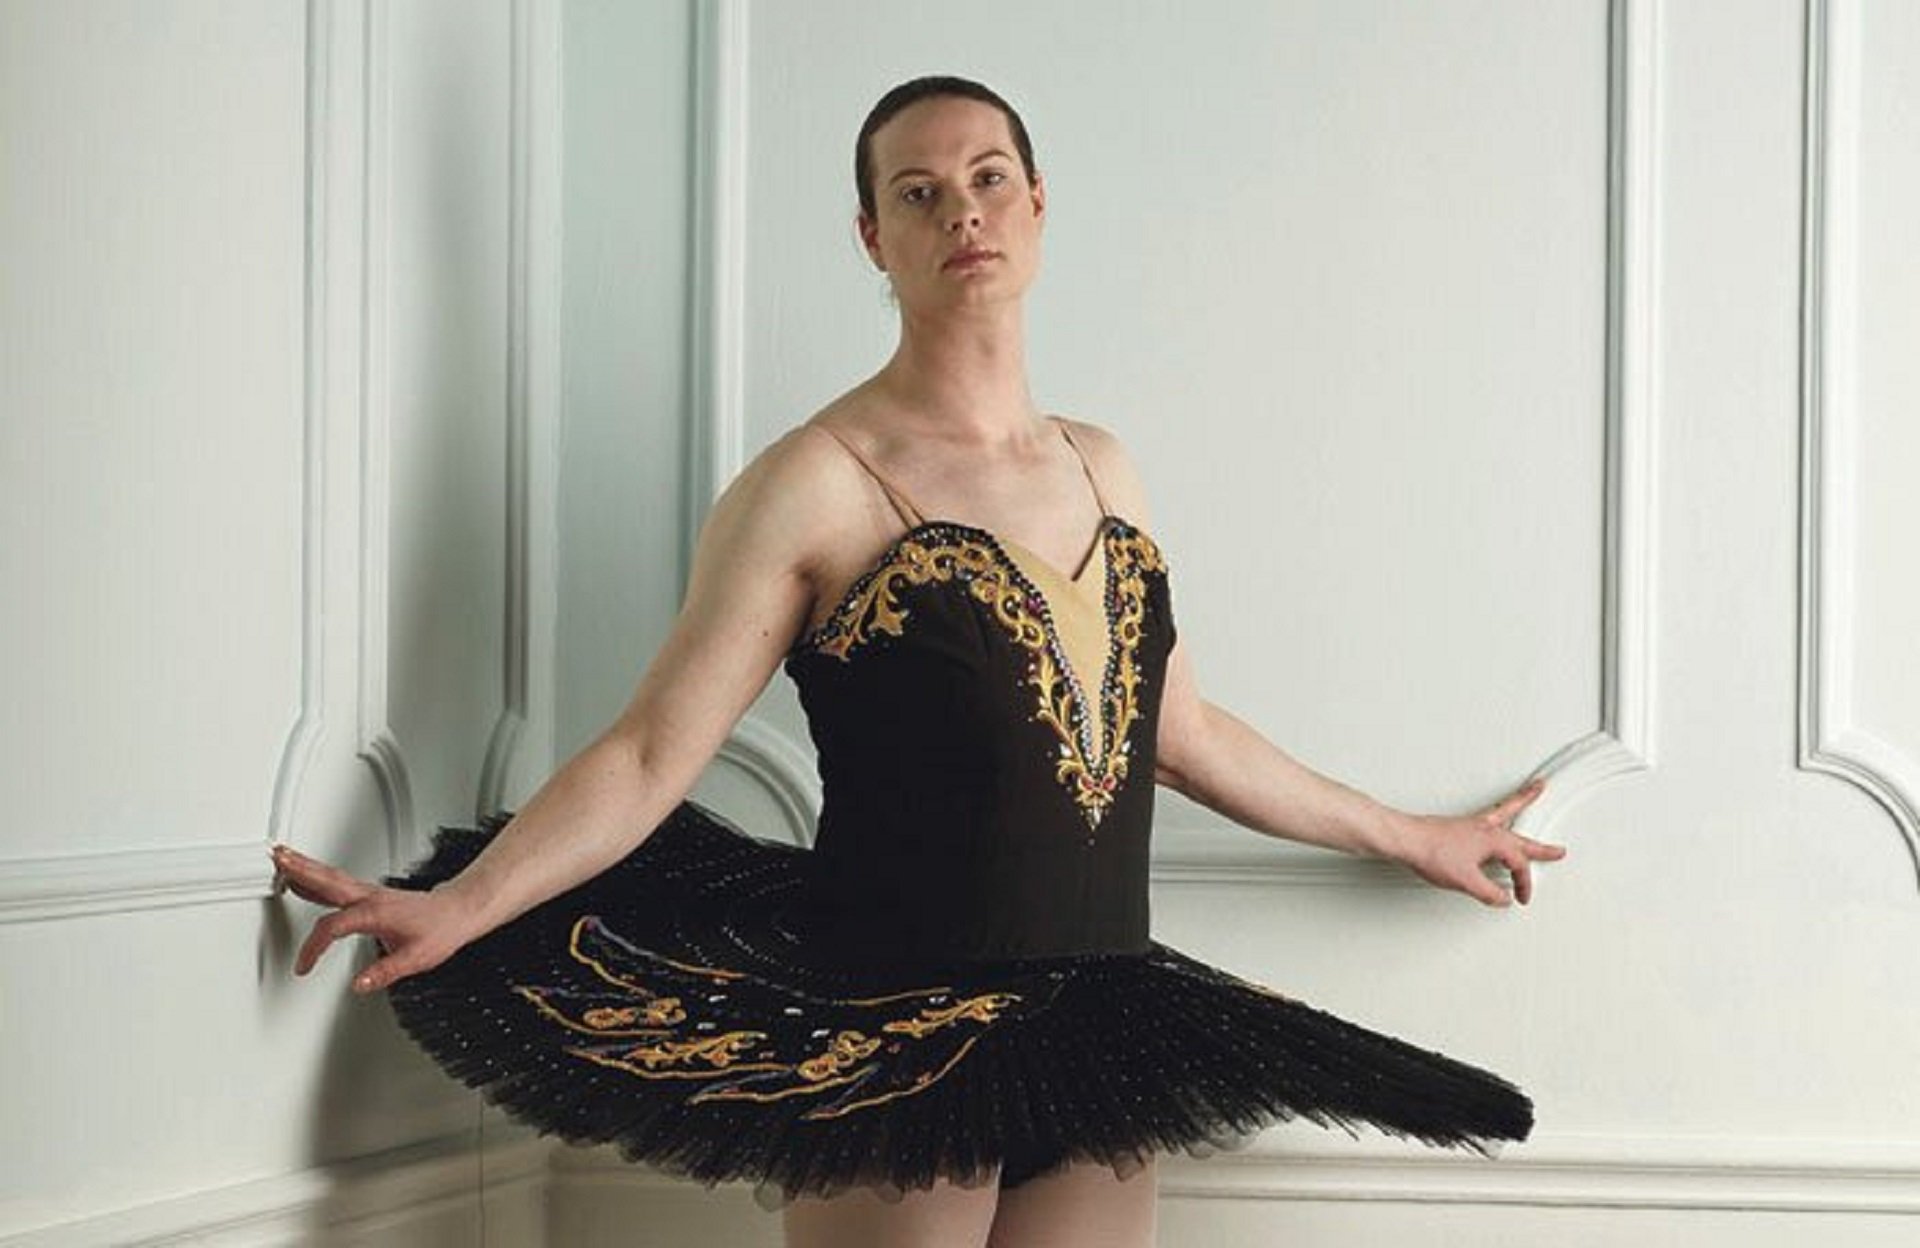 El Reino Unido se indigna con el vídeo de una bailarina trans de la Royal Academy: "No sabe bailar"